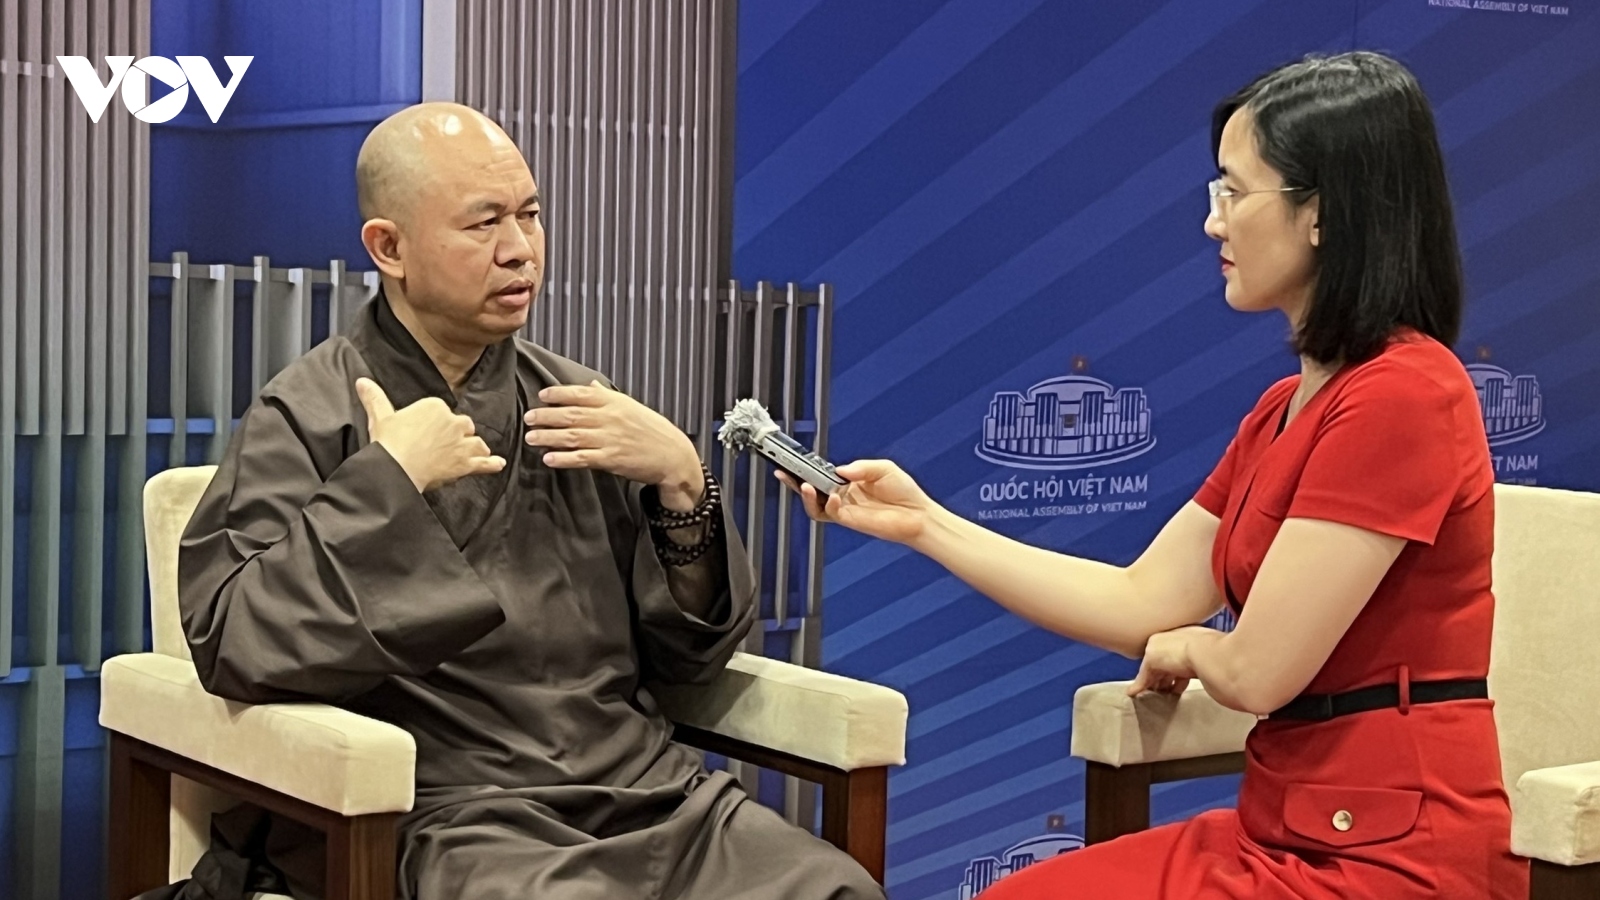 "Giáo hội Phật giáo Việt Nam sẽ kiểm soát tốt nhất các bài thuyết giảng"